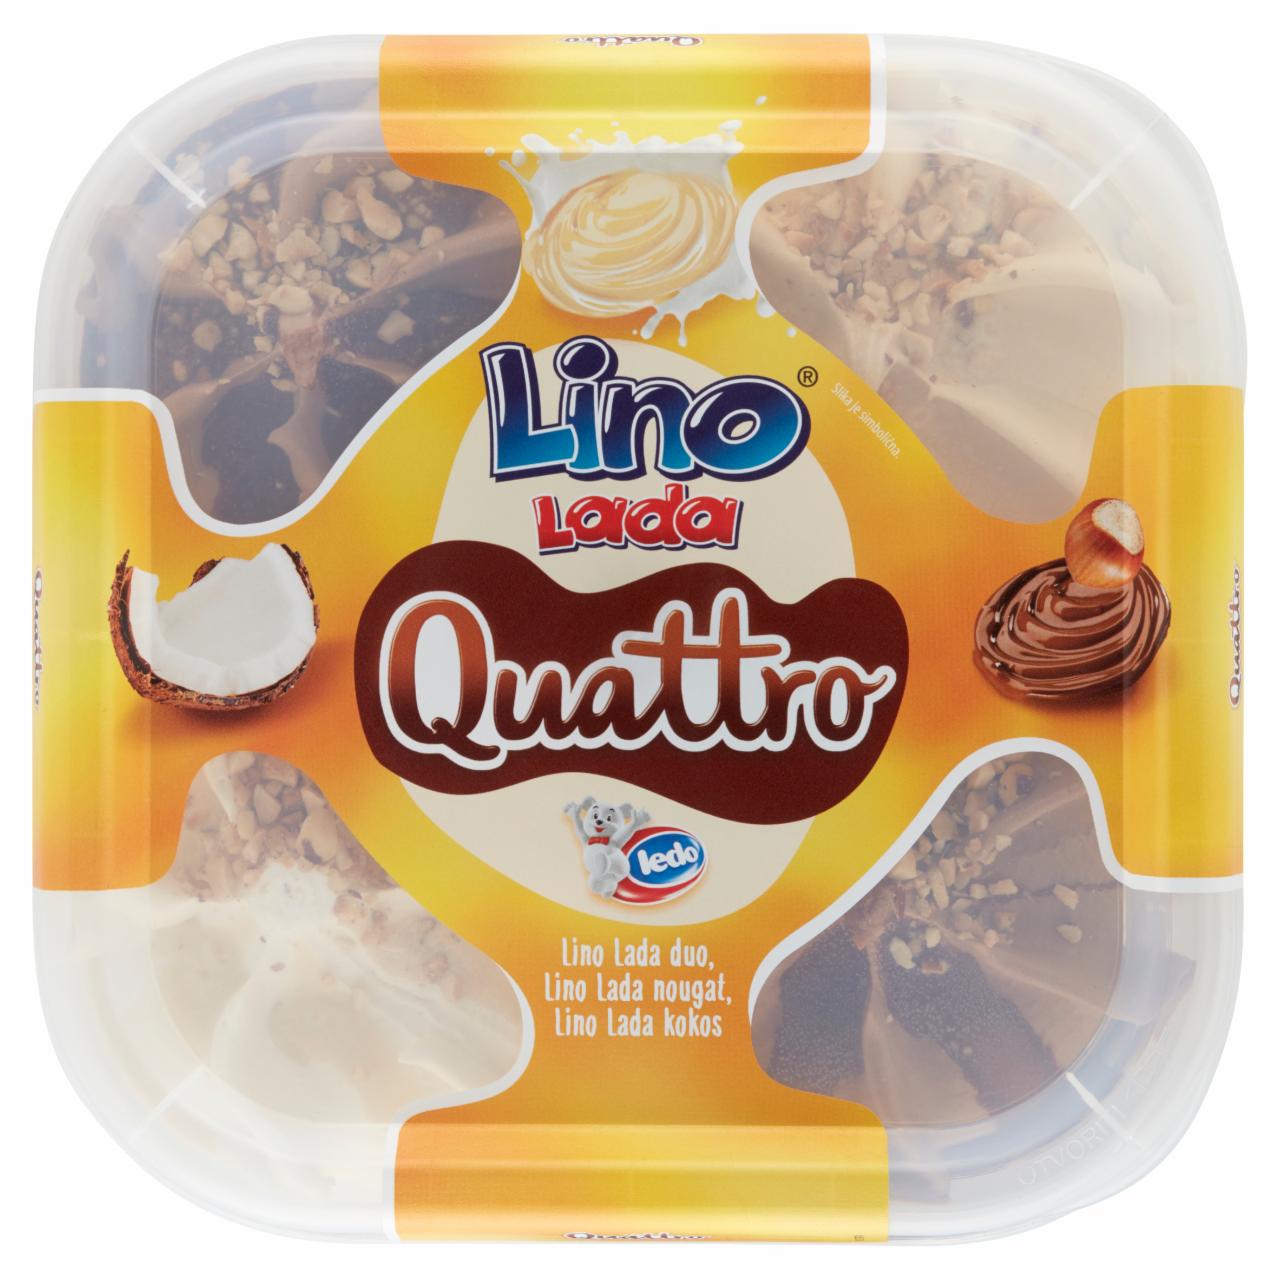 Képek - Lino Lada Quattro mogyorókrémes-nugát krémes jégkrém, tejes krém-kókusz ízű jégkrém 1650 ml